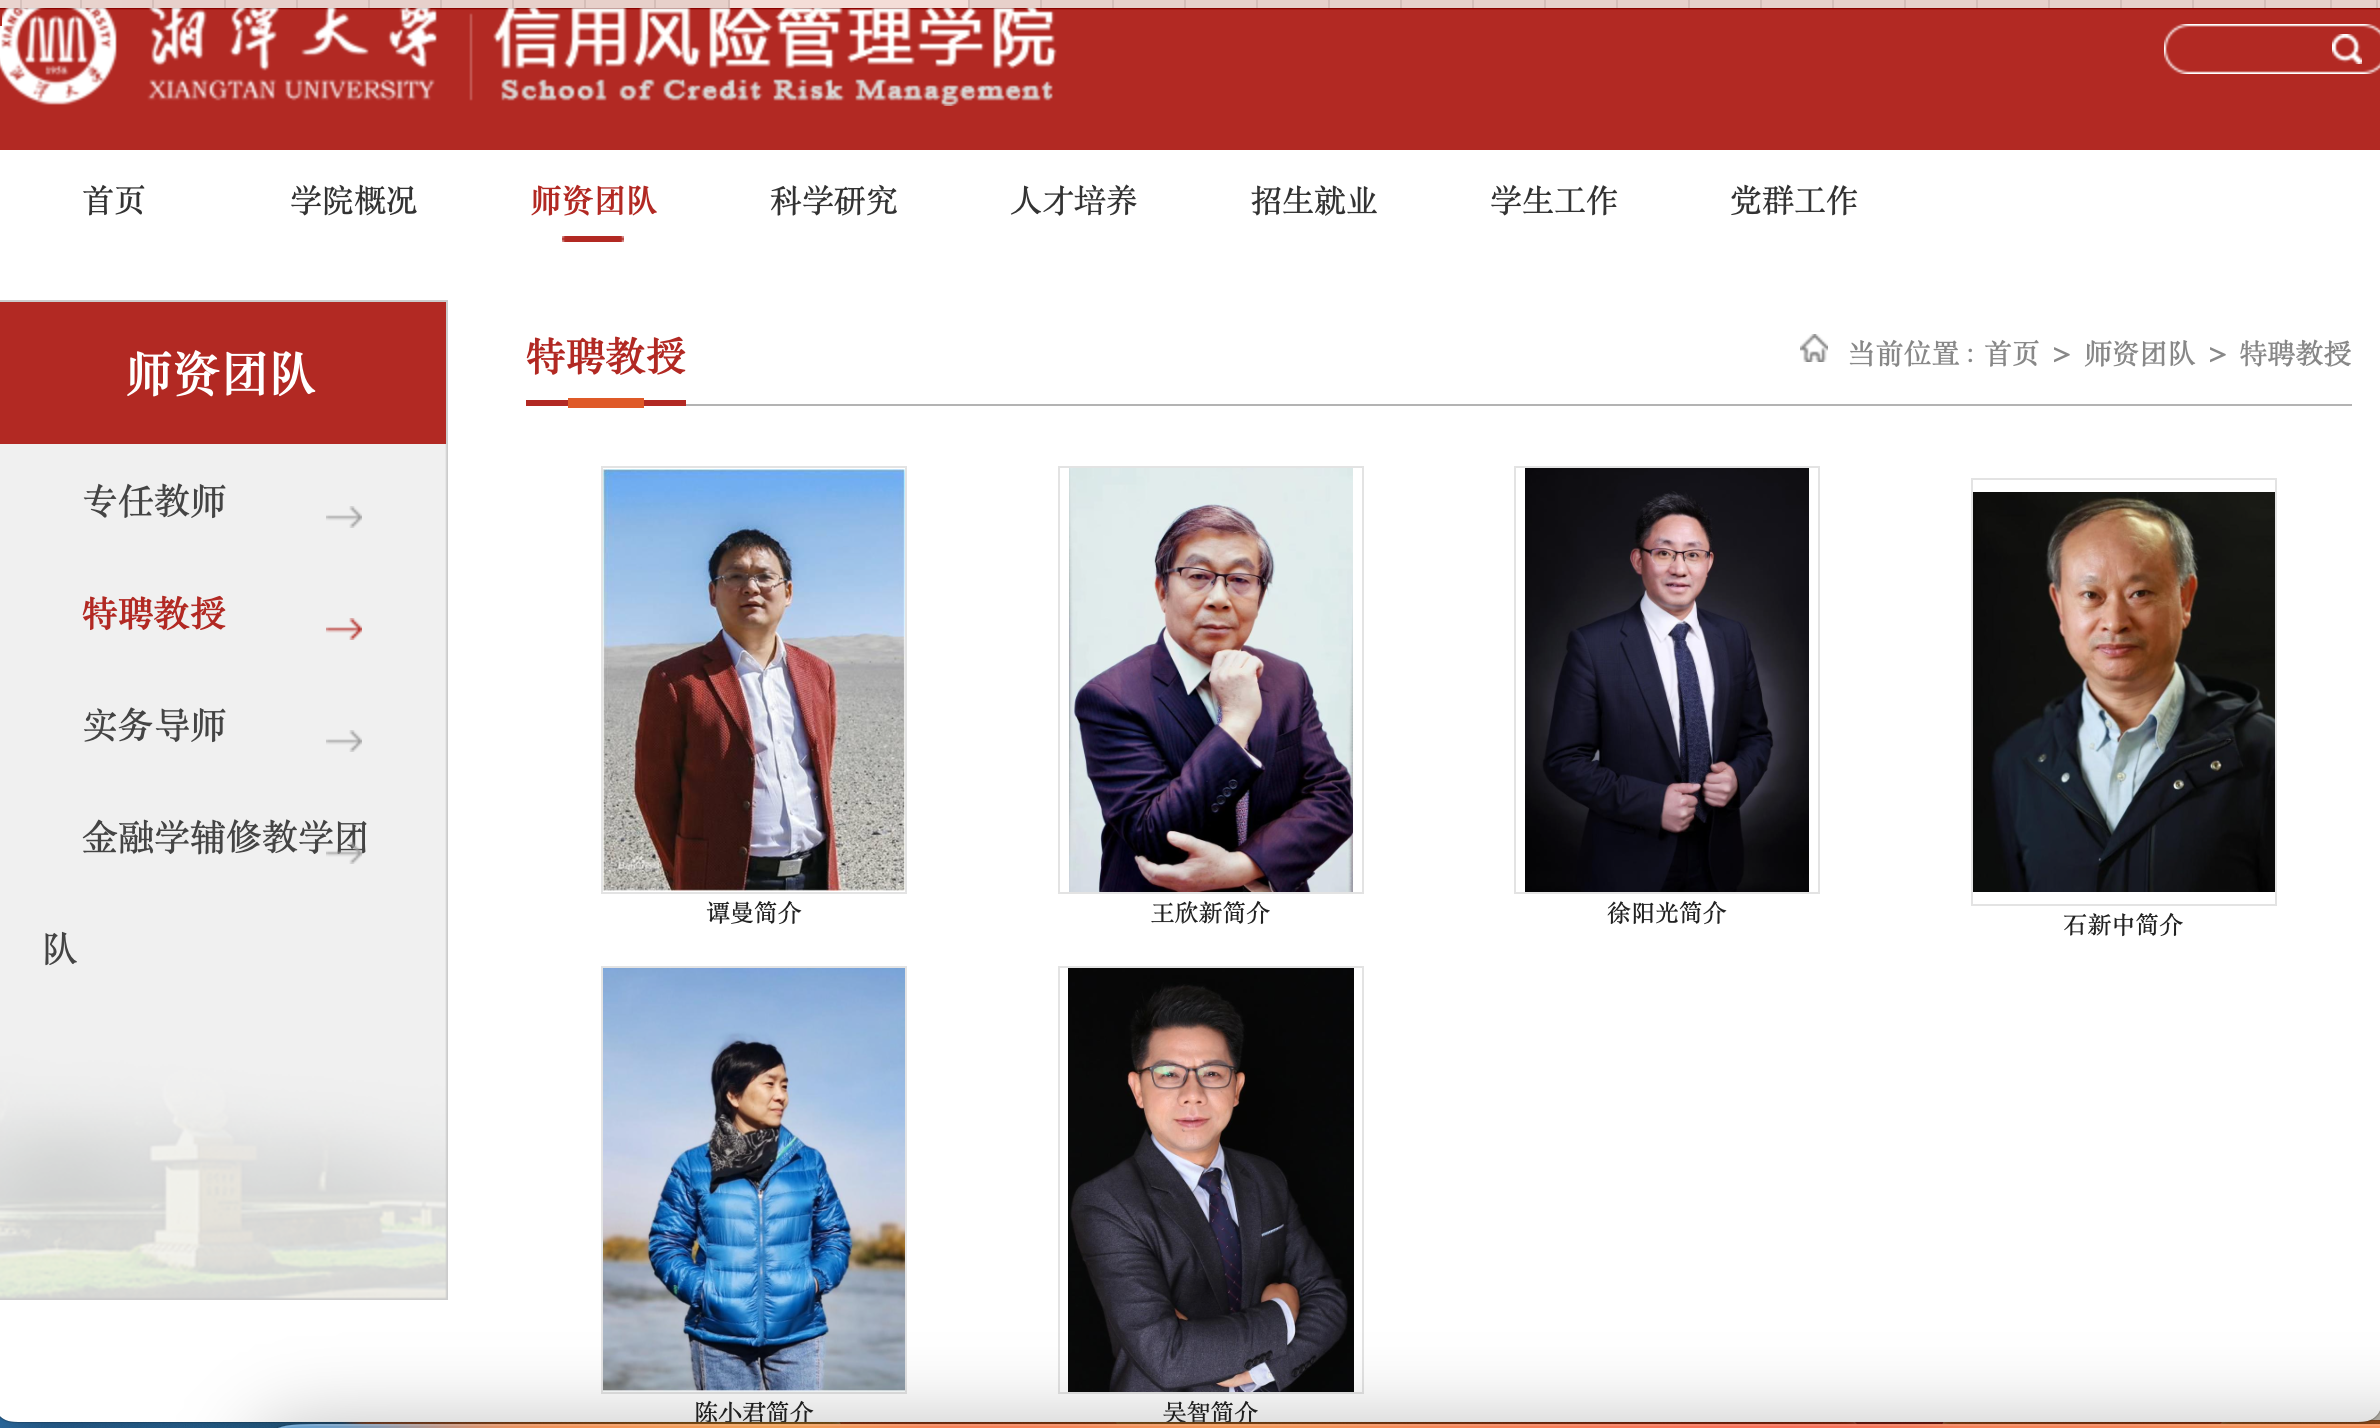 谭曼为湘潭大学信用风险管理学院特聘教授 湘潭大学官微 图